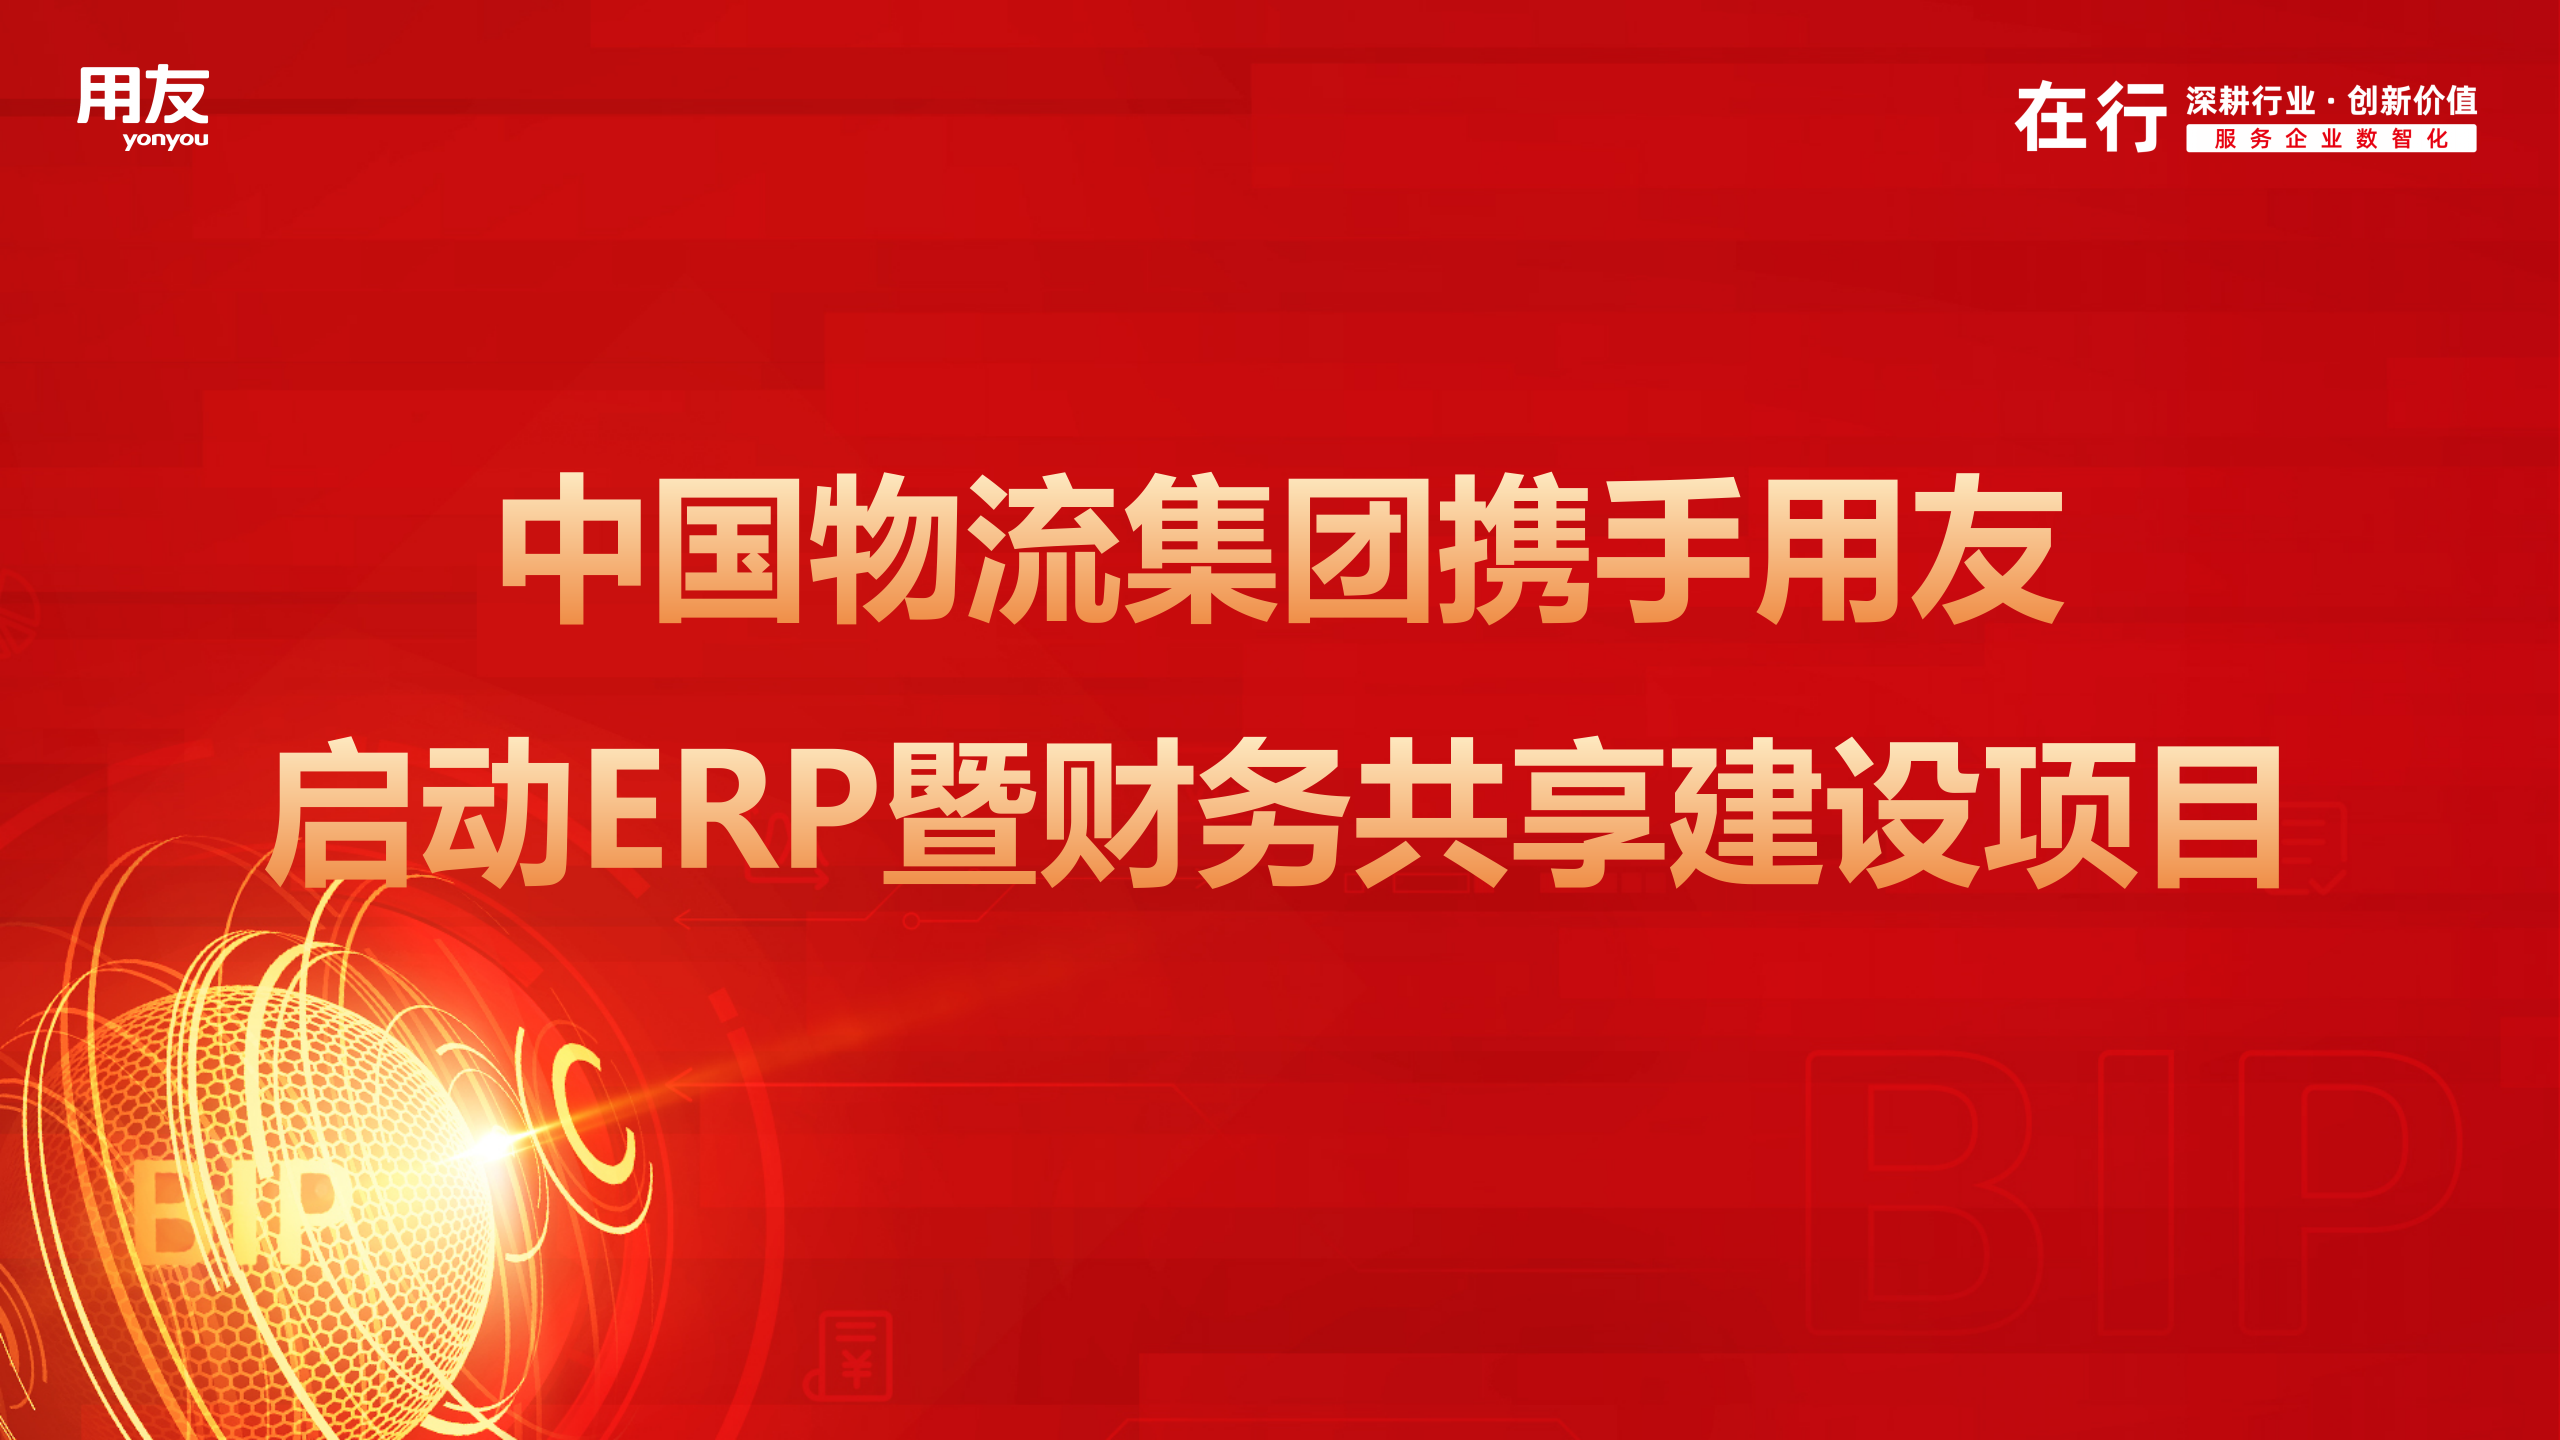 中国物流集团携手用友启动ERP暨财务共享建设项目